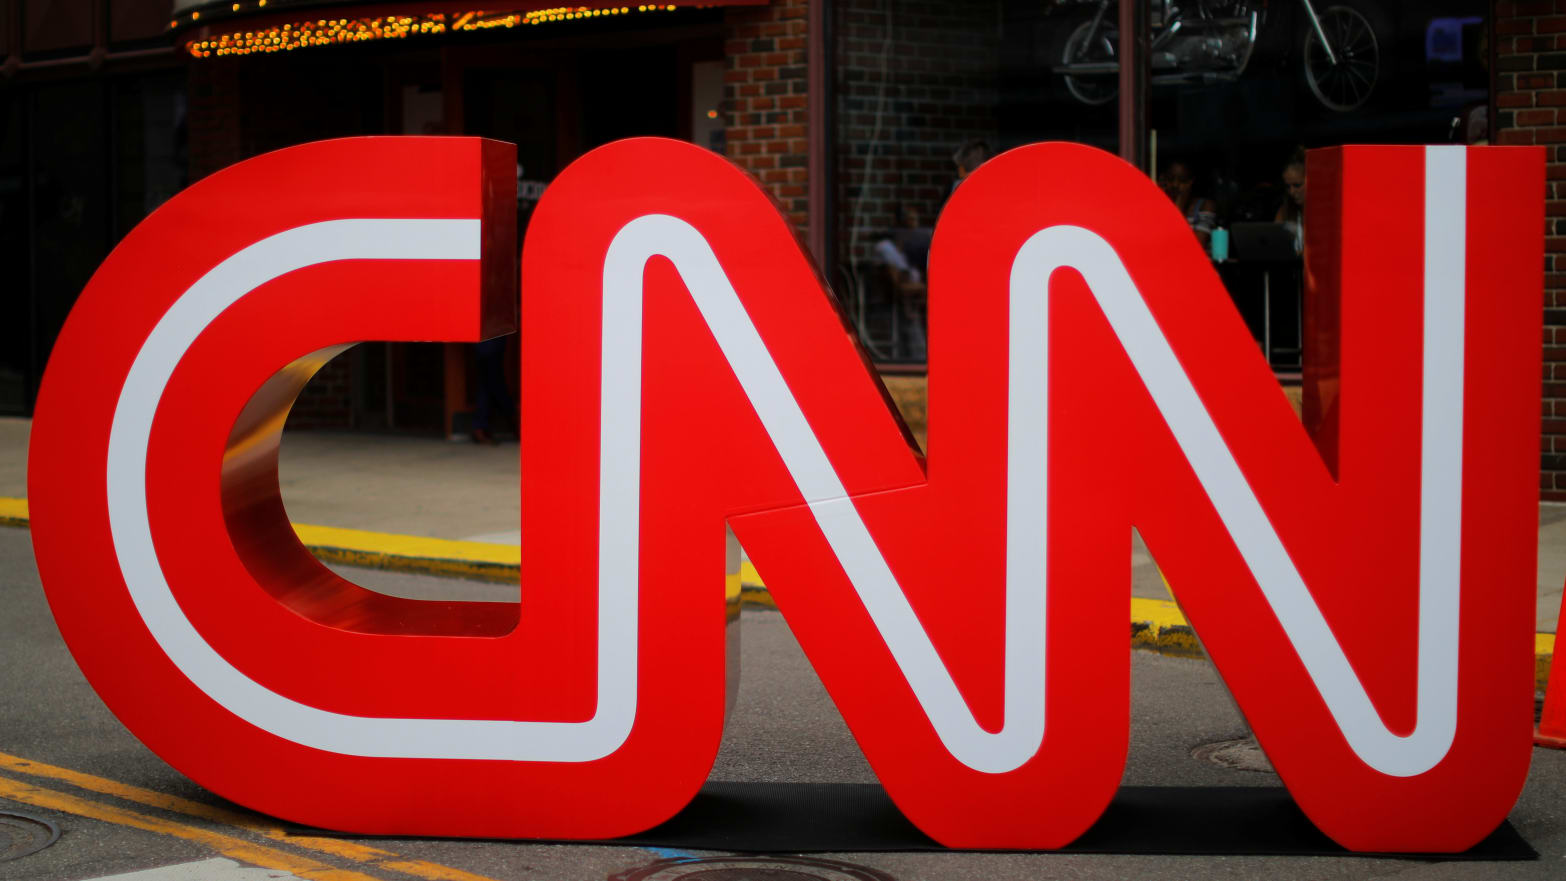 The CNN logo.